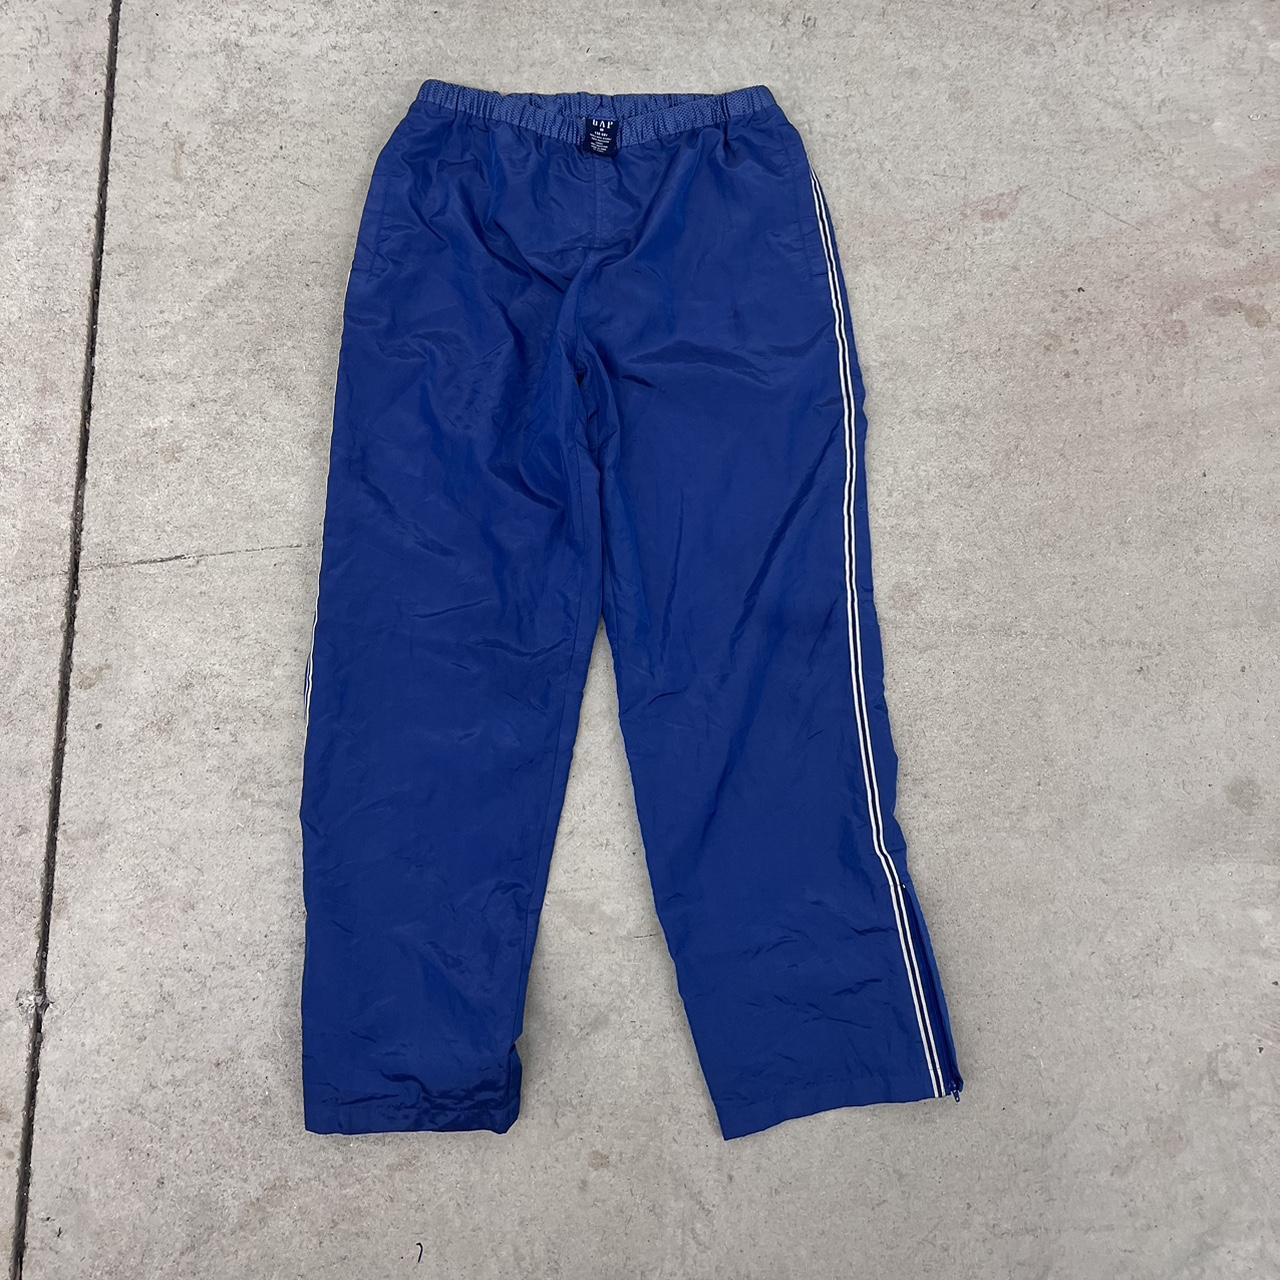 Gap Men's Blue Trousers | Depop